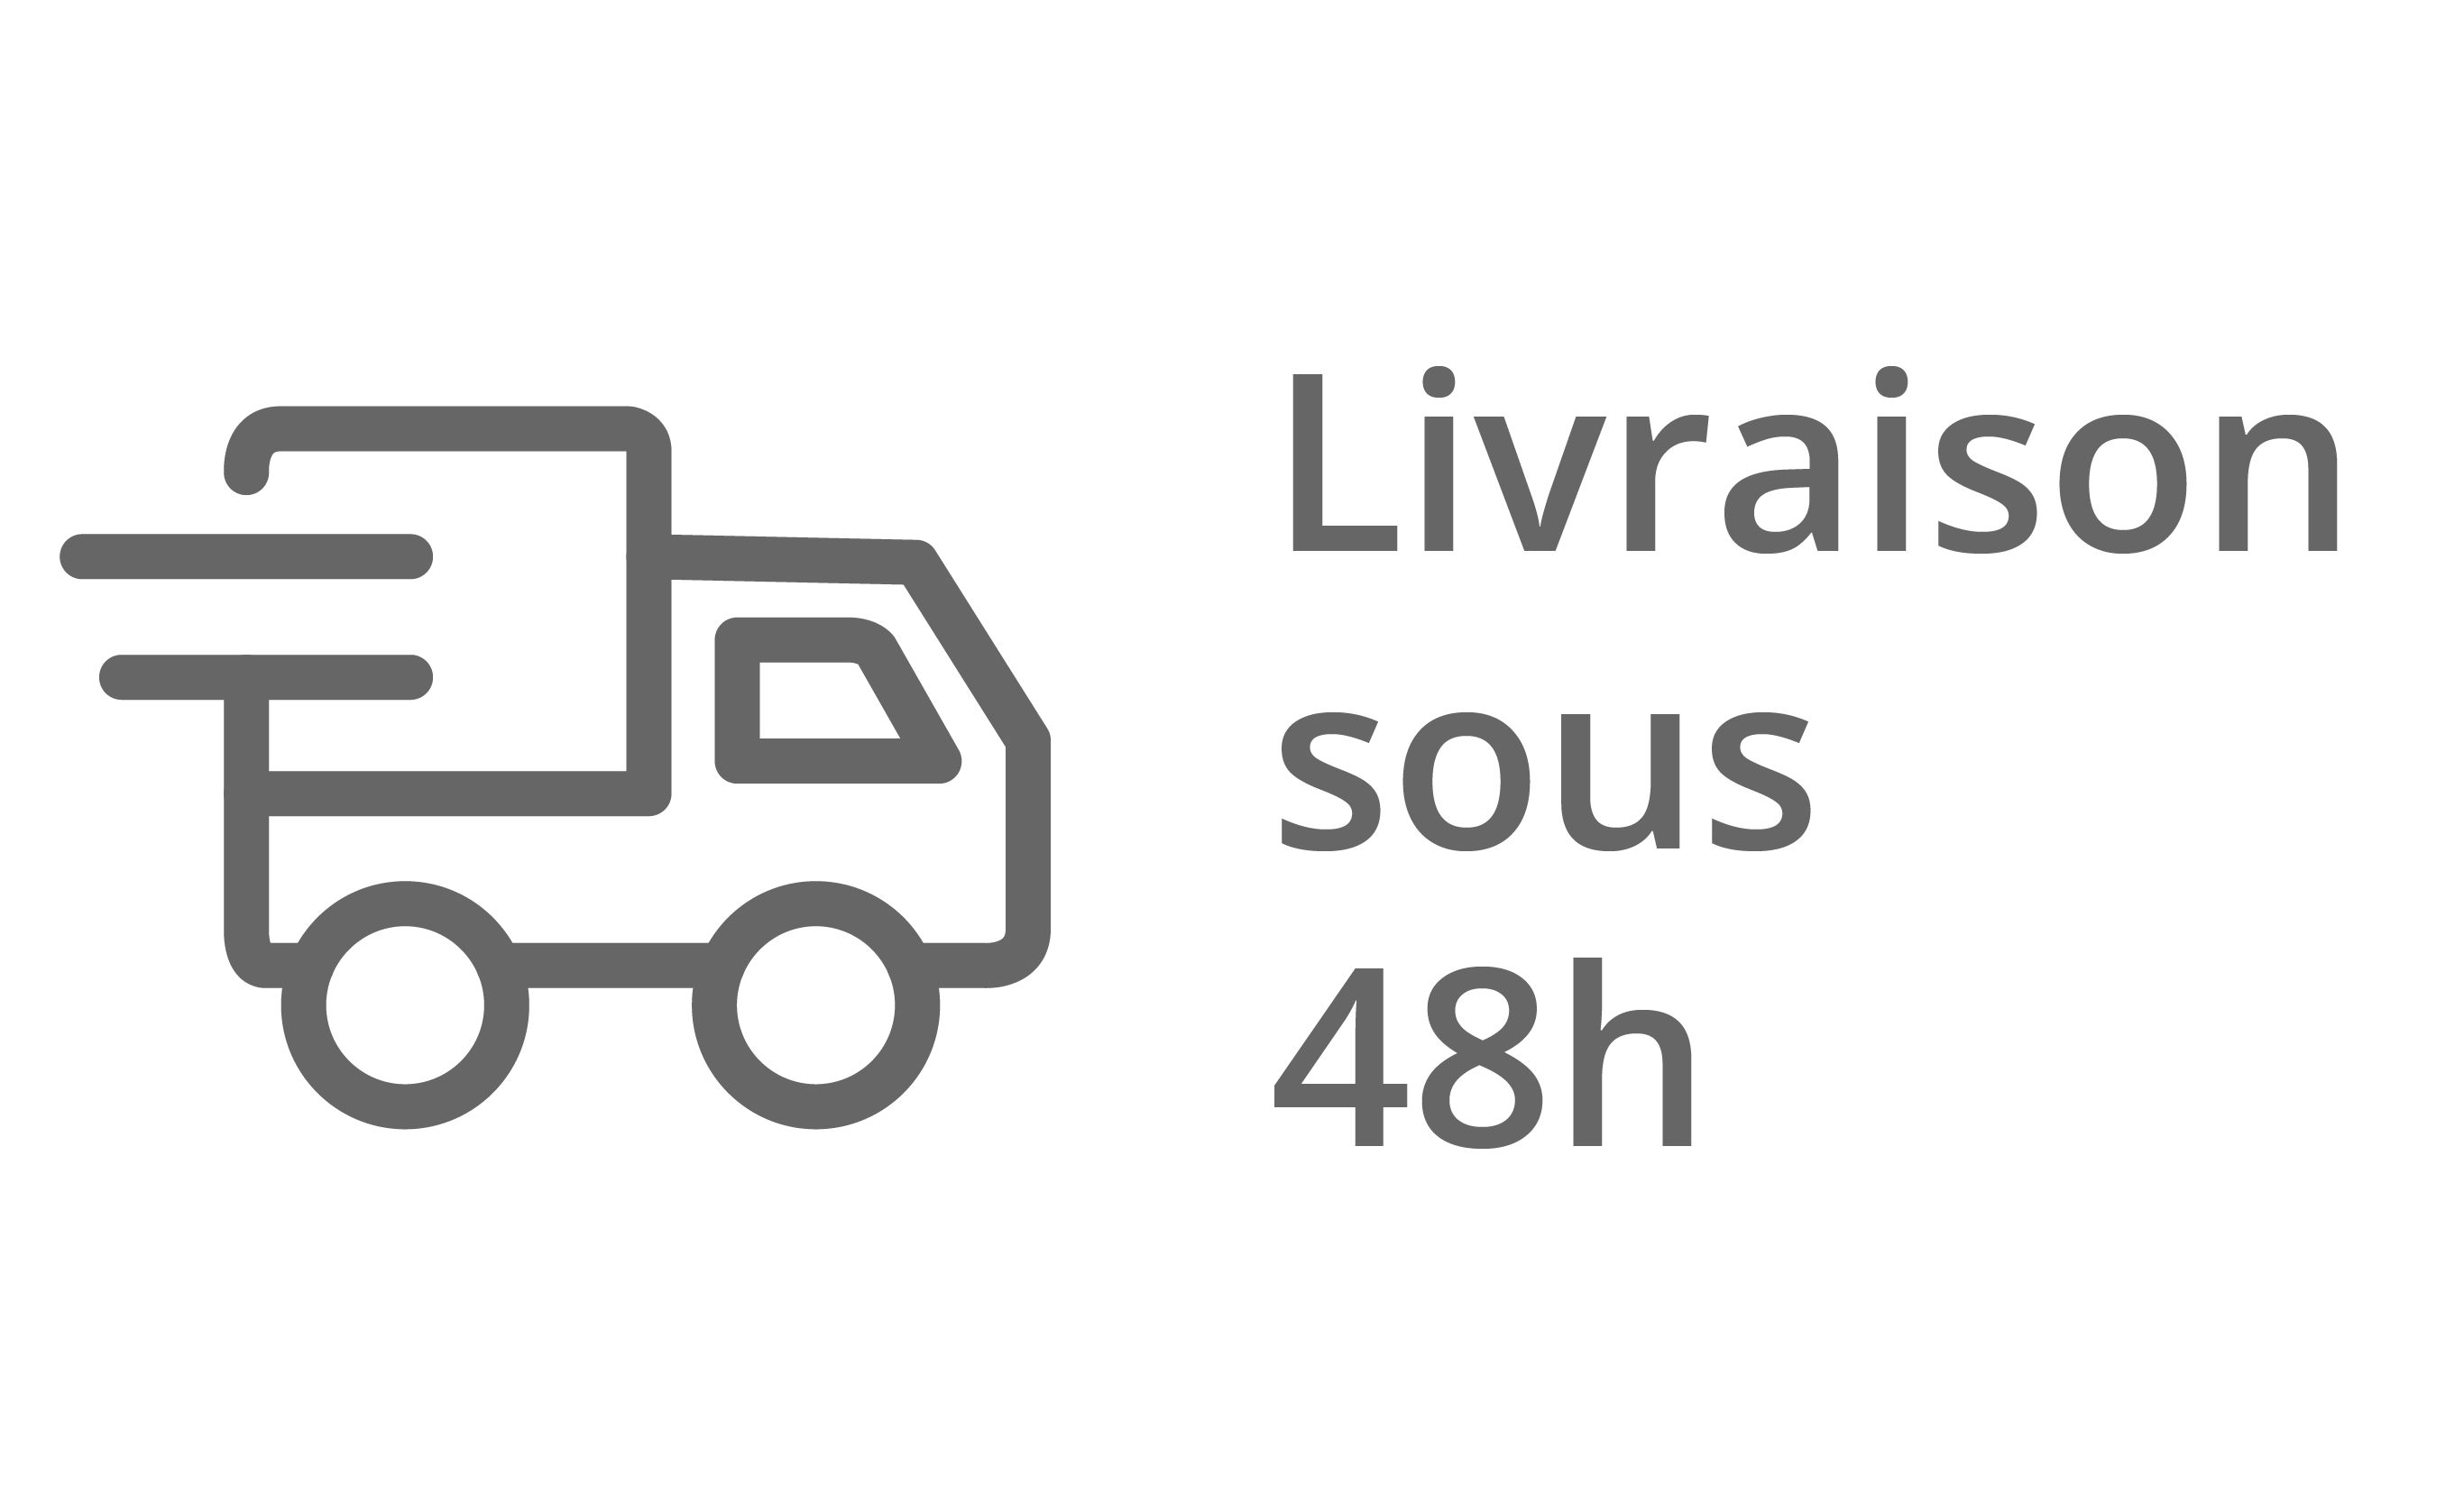 La livraison est disponible sous 48h pour les personnes commandant dans la région Auvergne-Rhône-Alpes